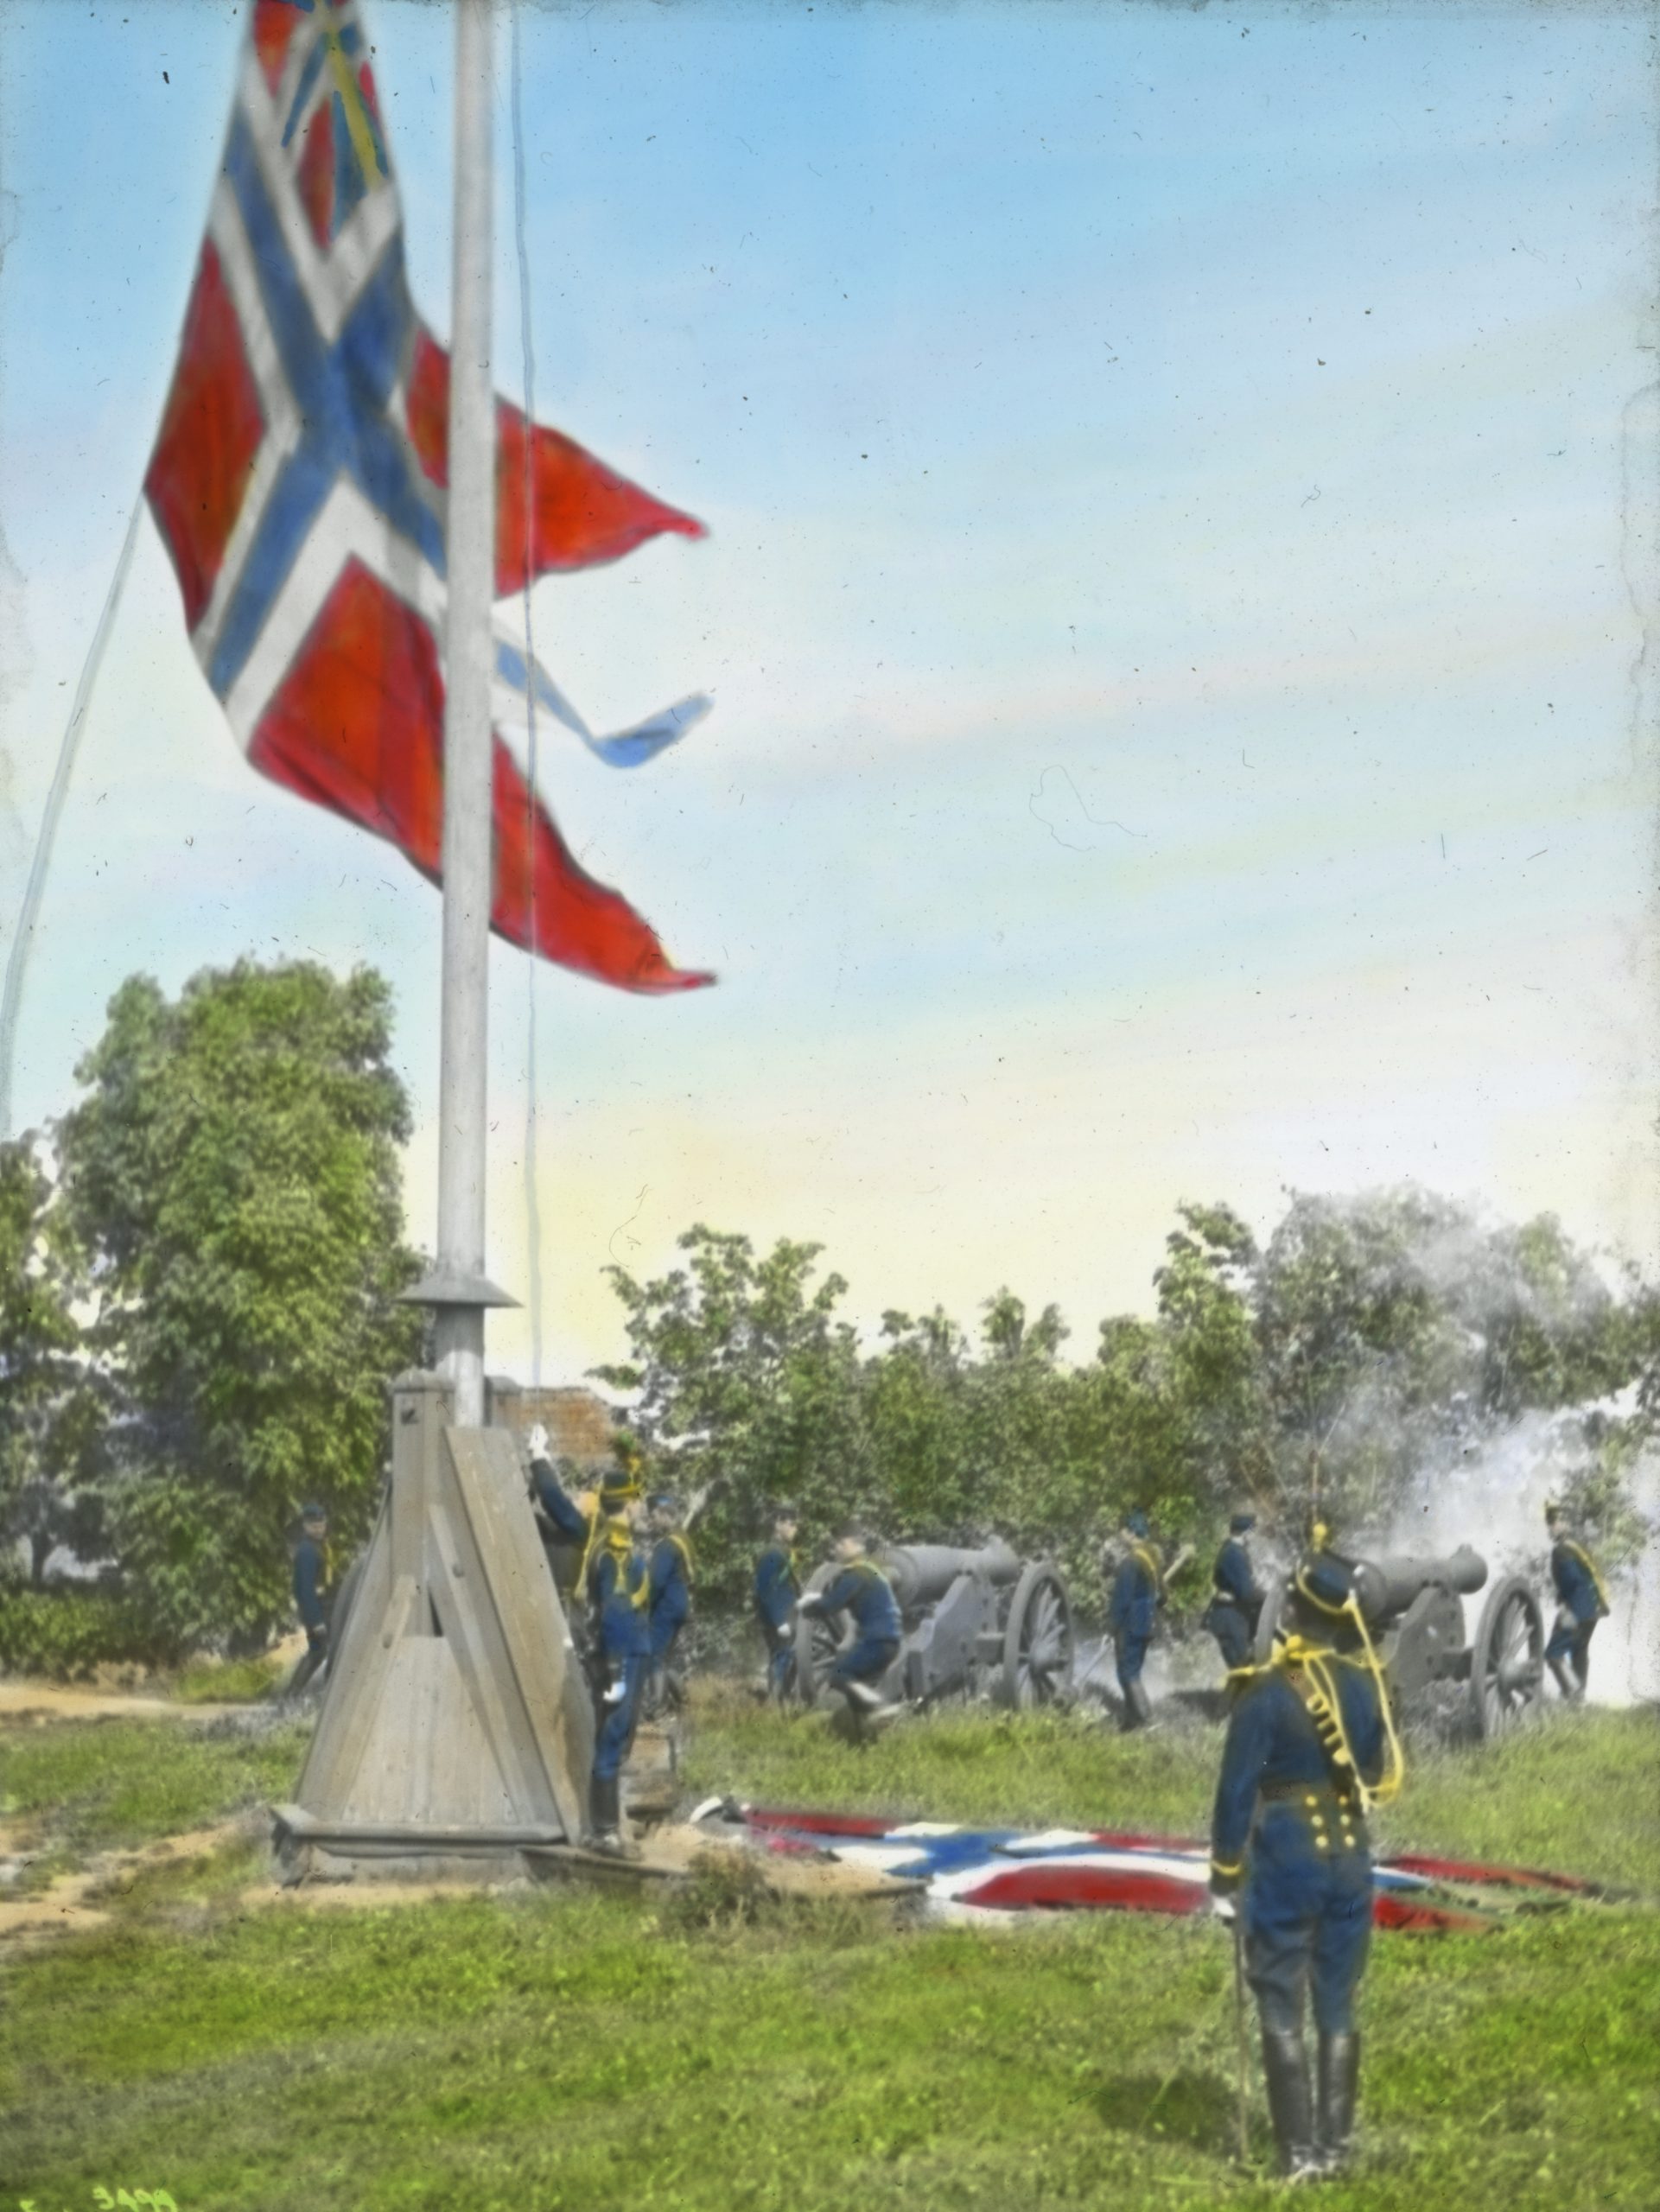 Et flagg senkes med soldater til stede. Kanoner ses i bakgrunnen